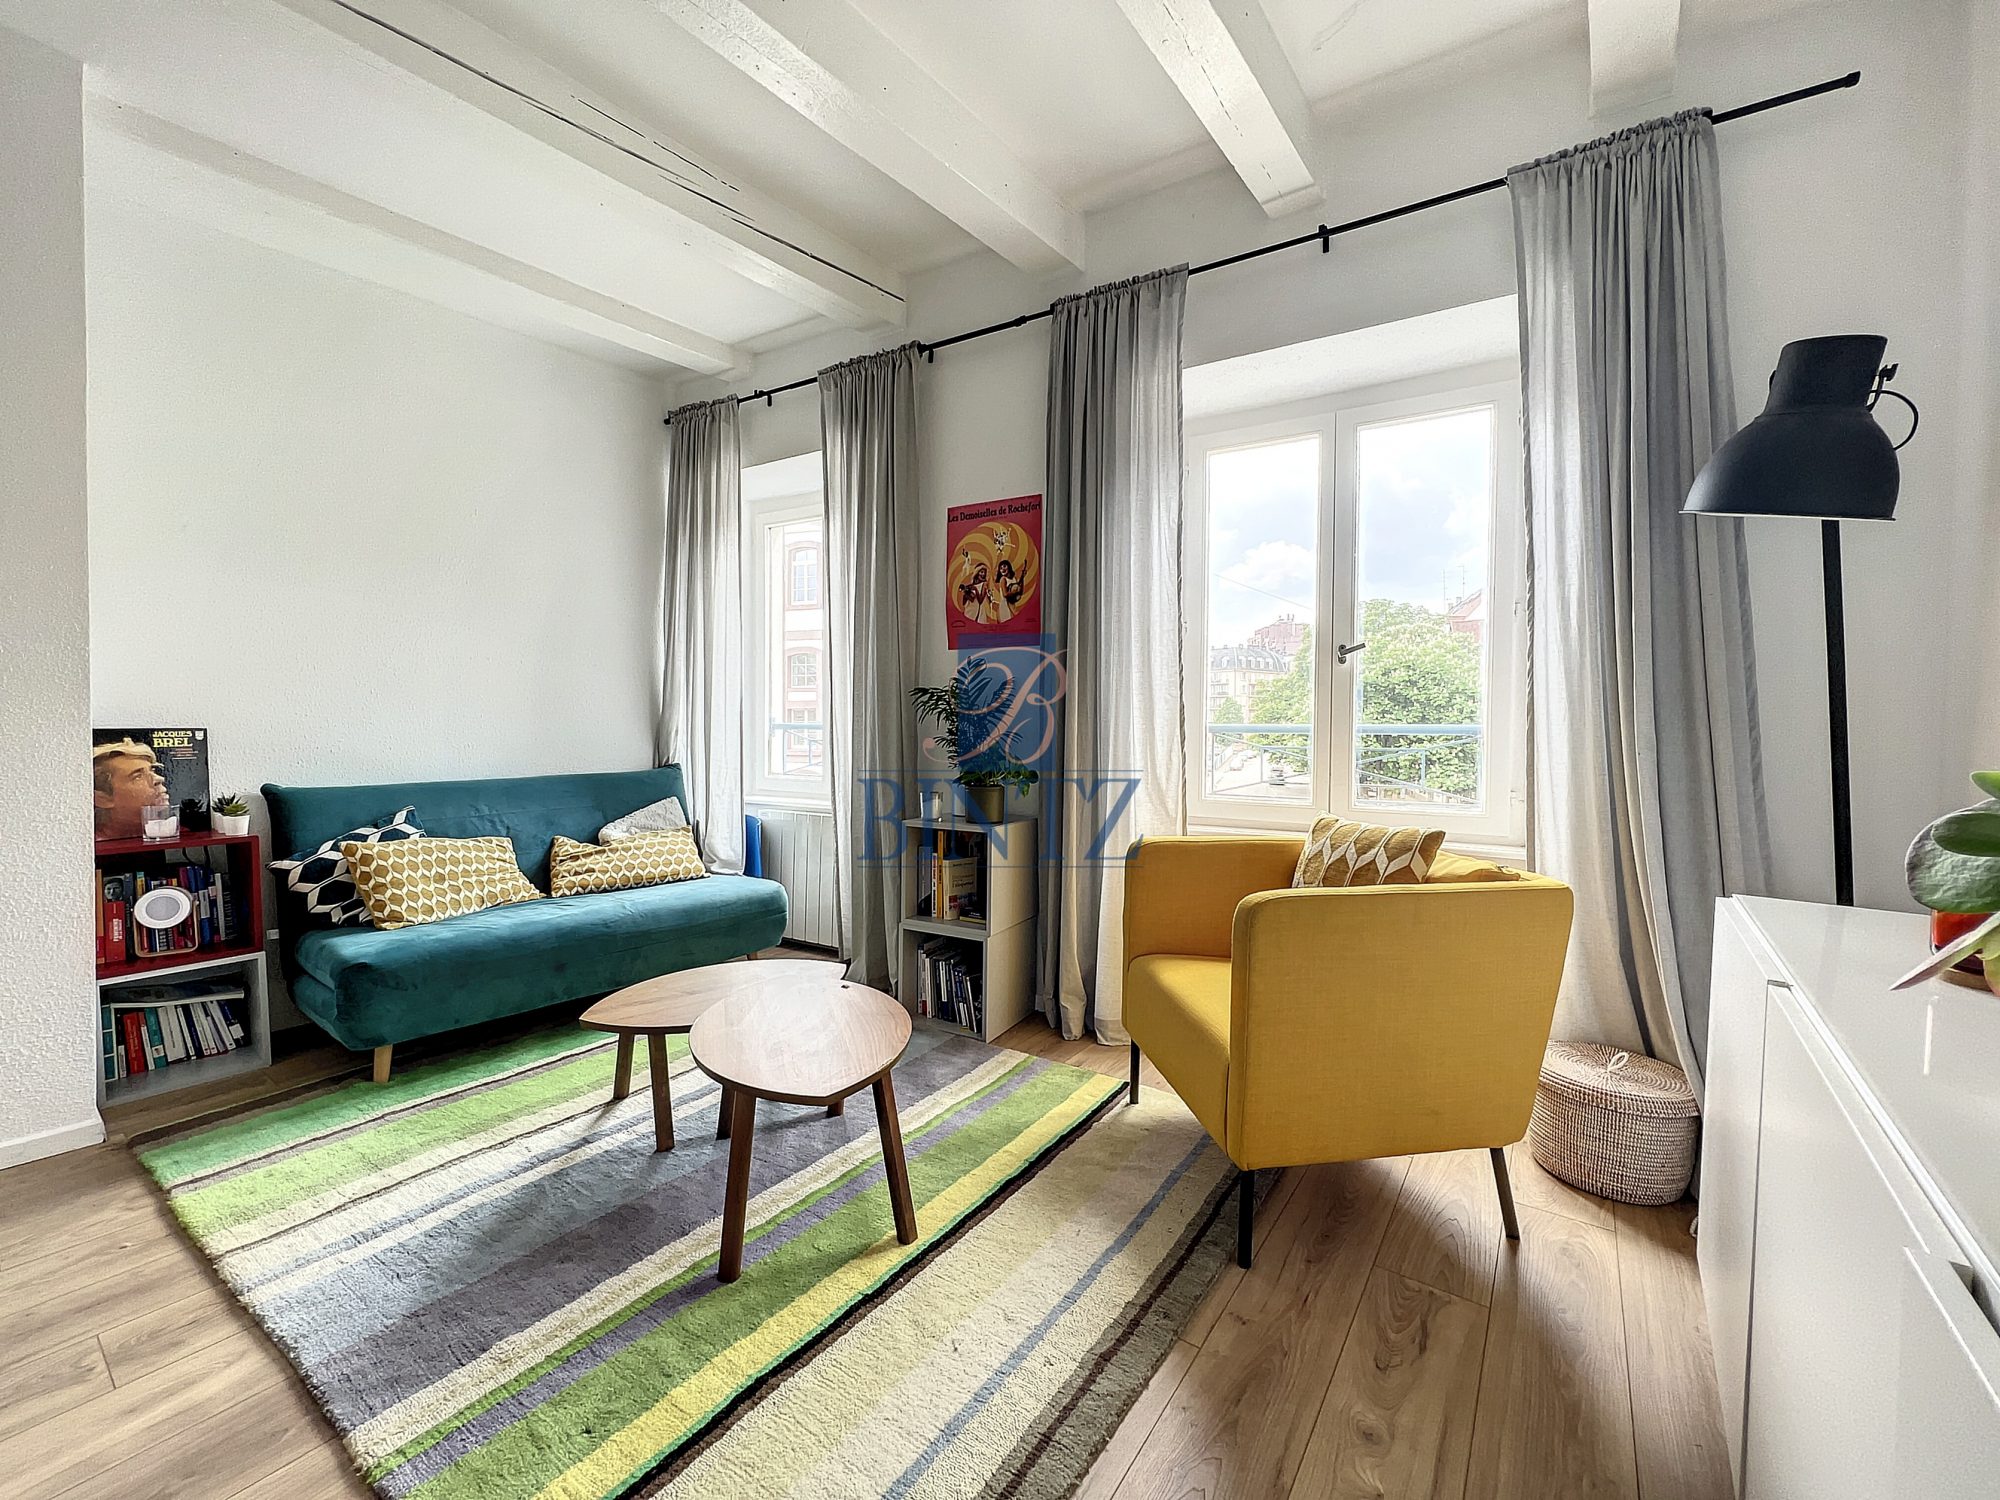 3P meuble rue de zurich - location appartement Strasbourg - Bintz Immobilier - 1